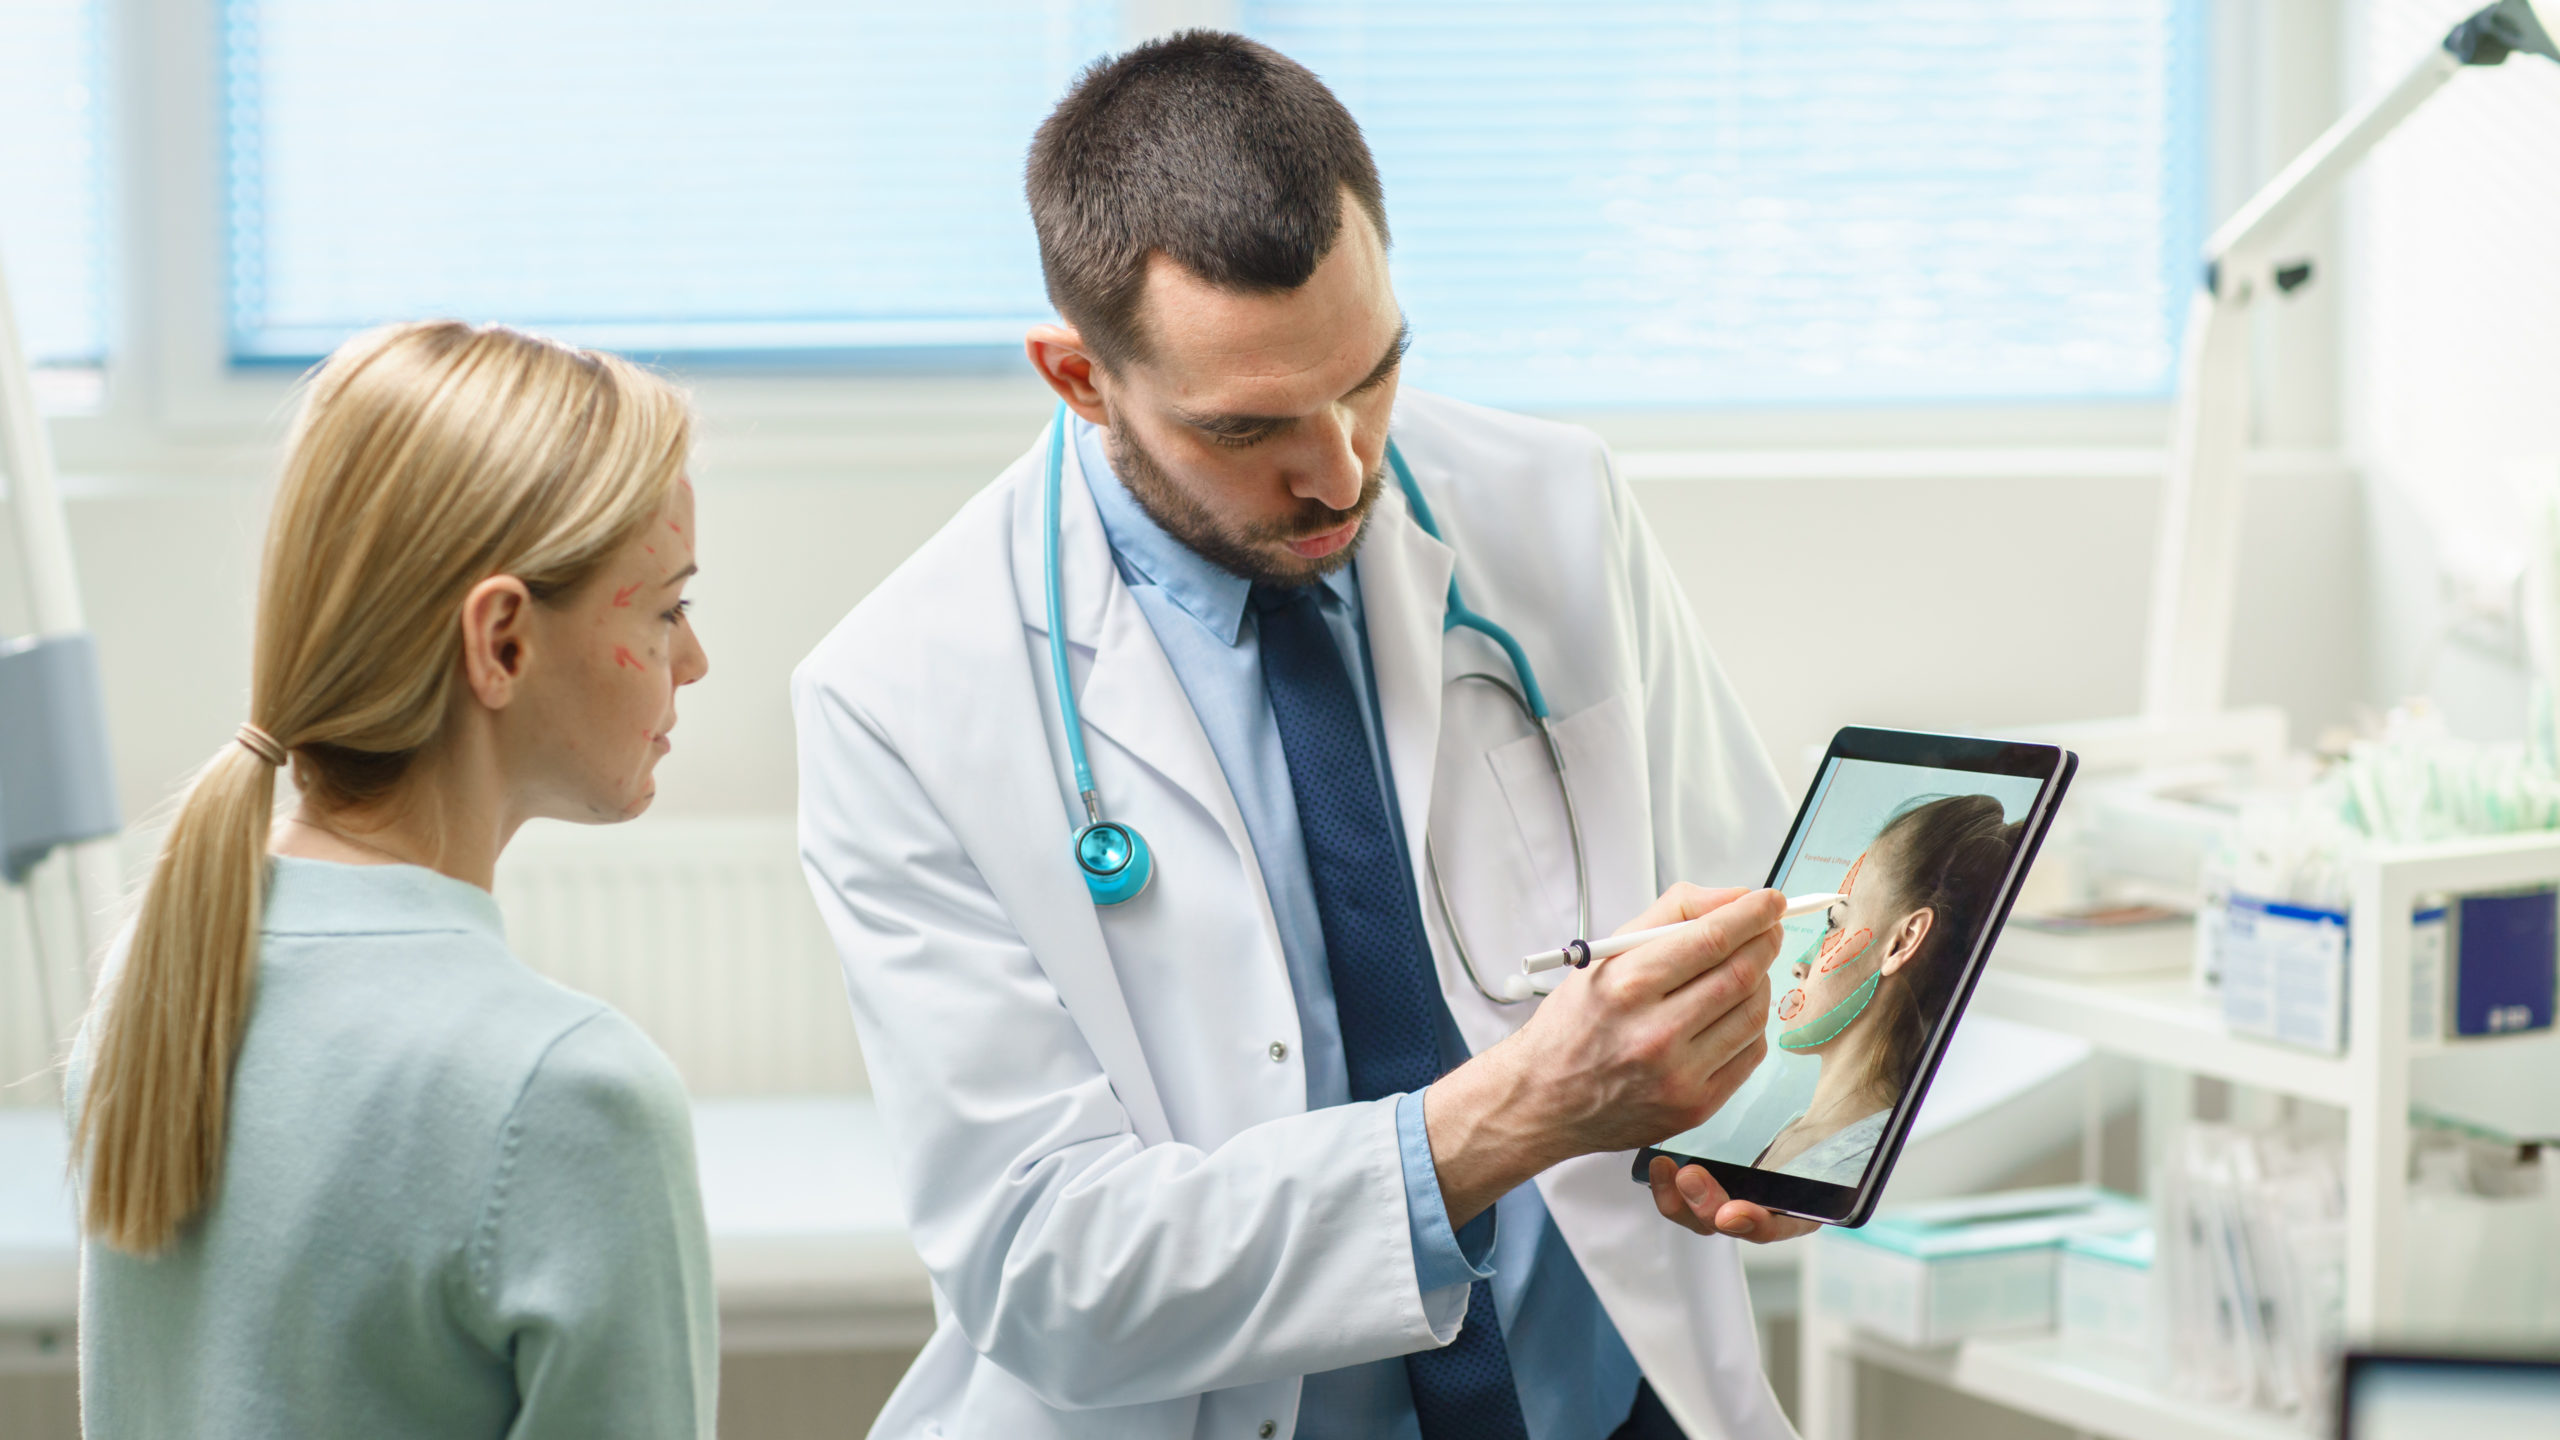 A plastic surgeon explains a procedure to a patient using a tablet. 